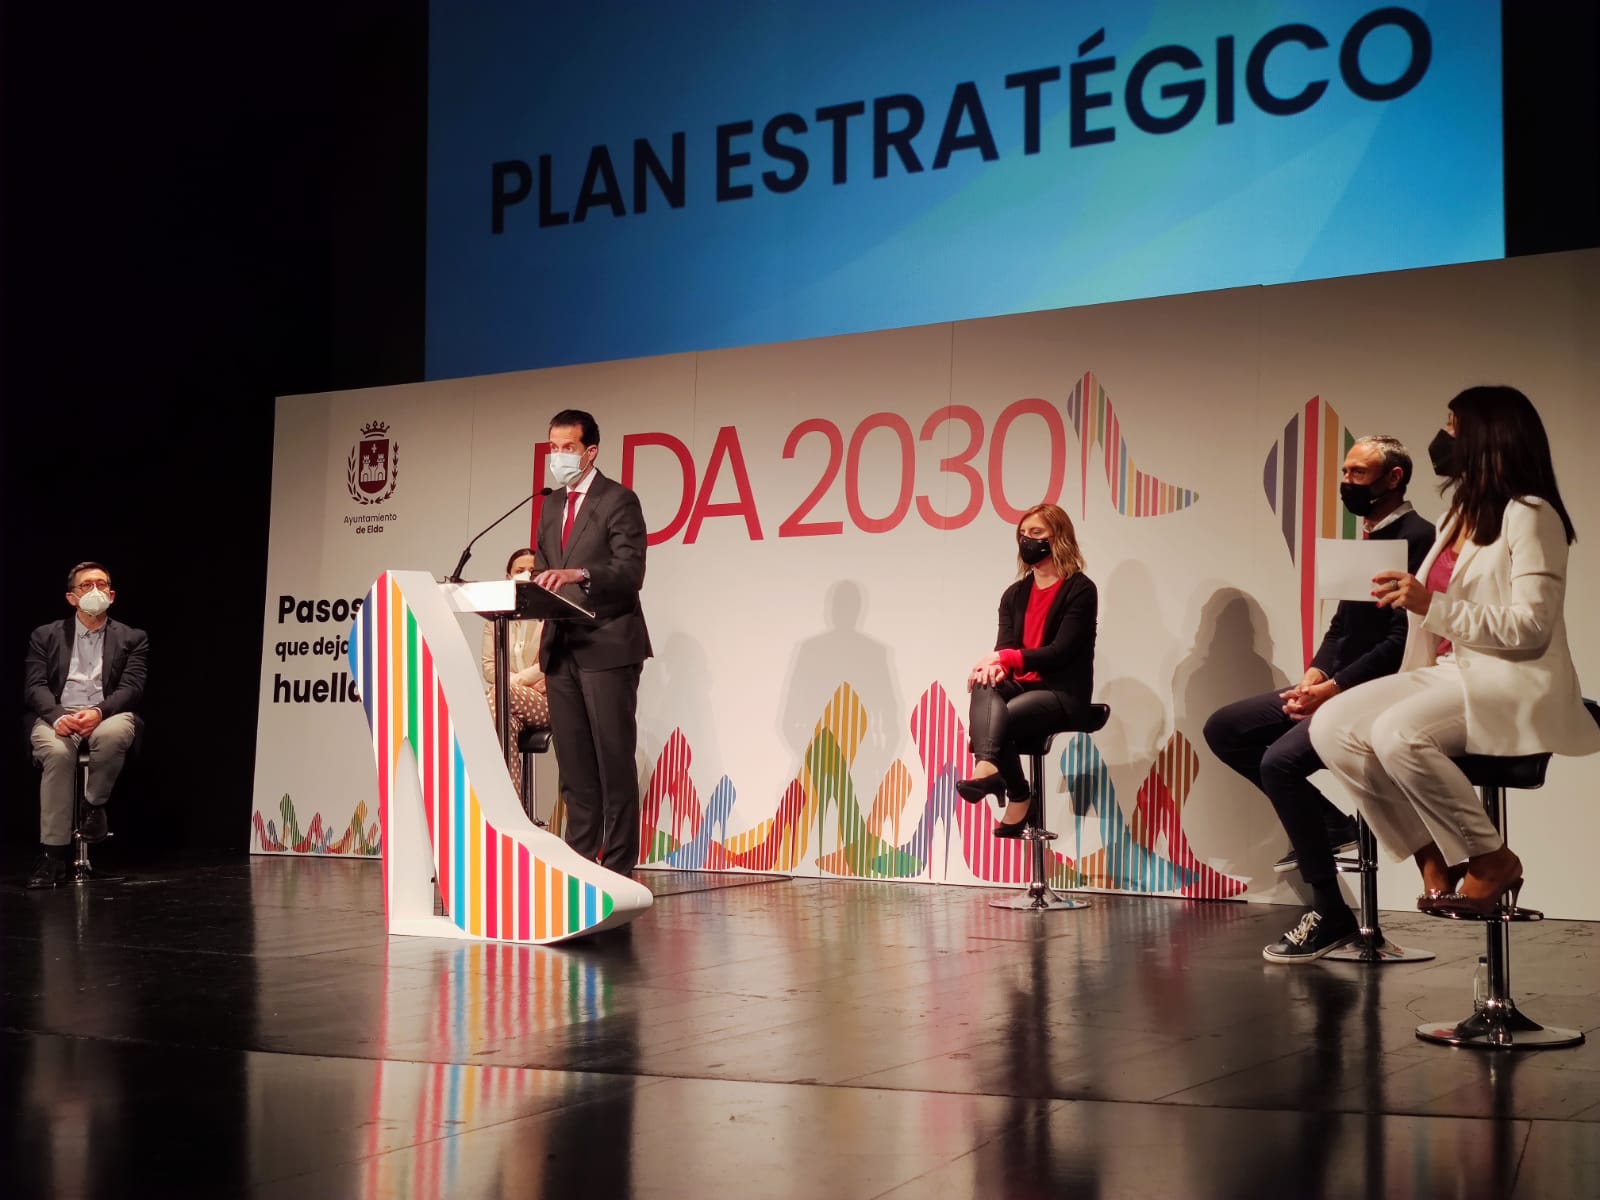 El Ayuntamiento de Elda da a conocer los coordinadores de los cinco Patrones que conforman el Plan Estratégico Elda 2030